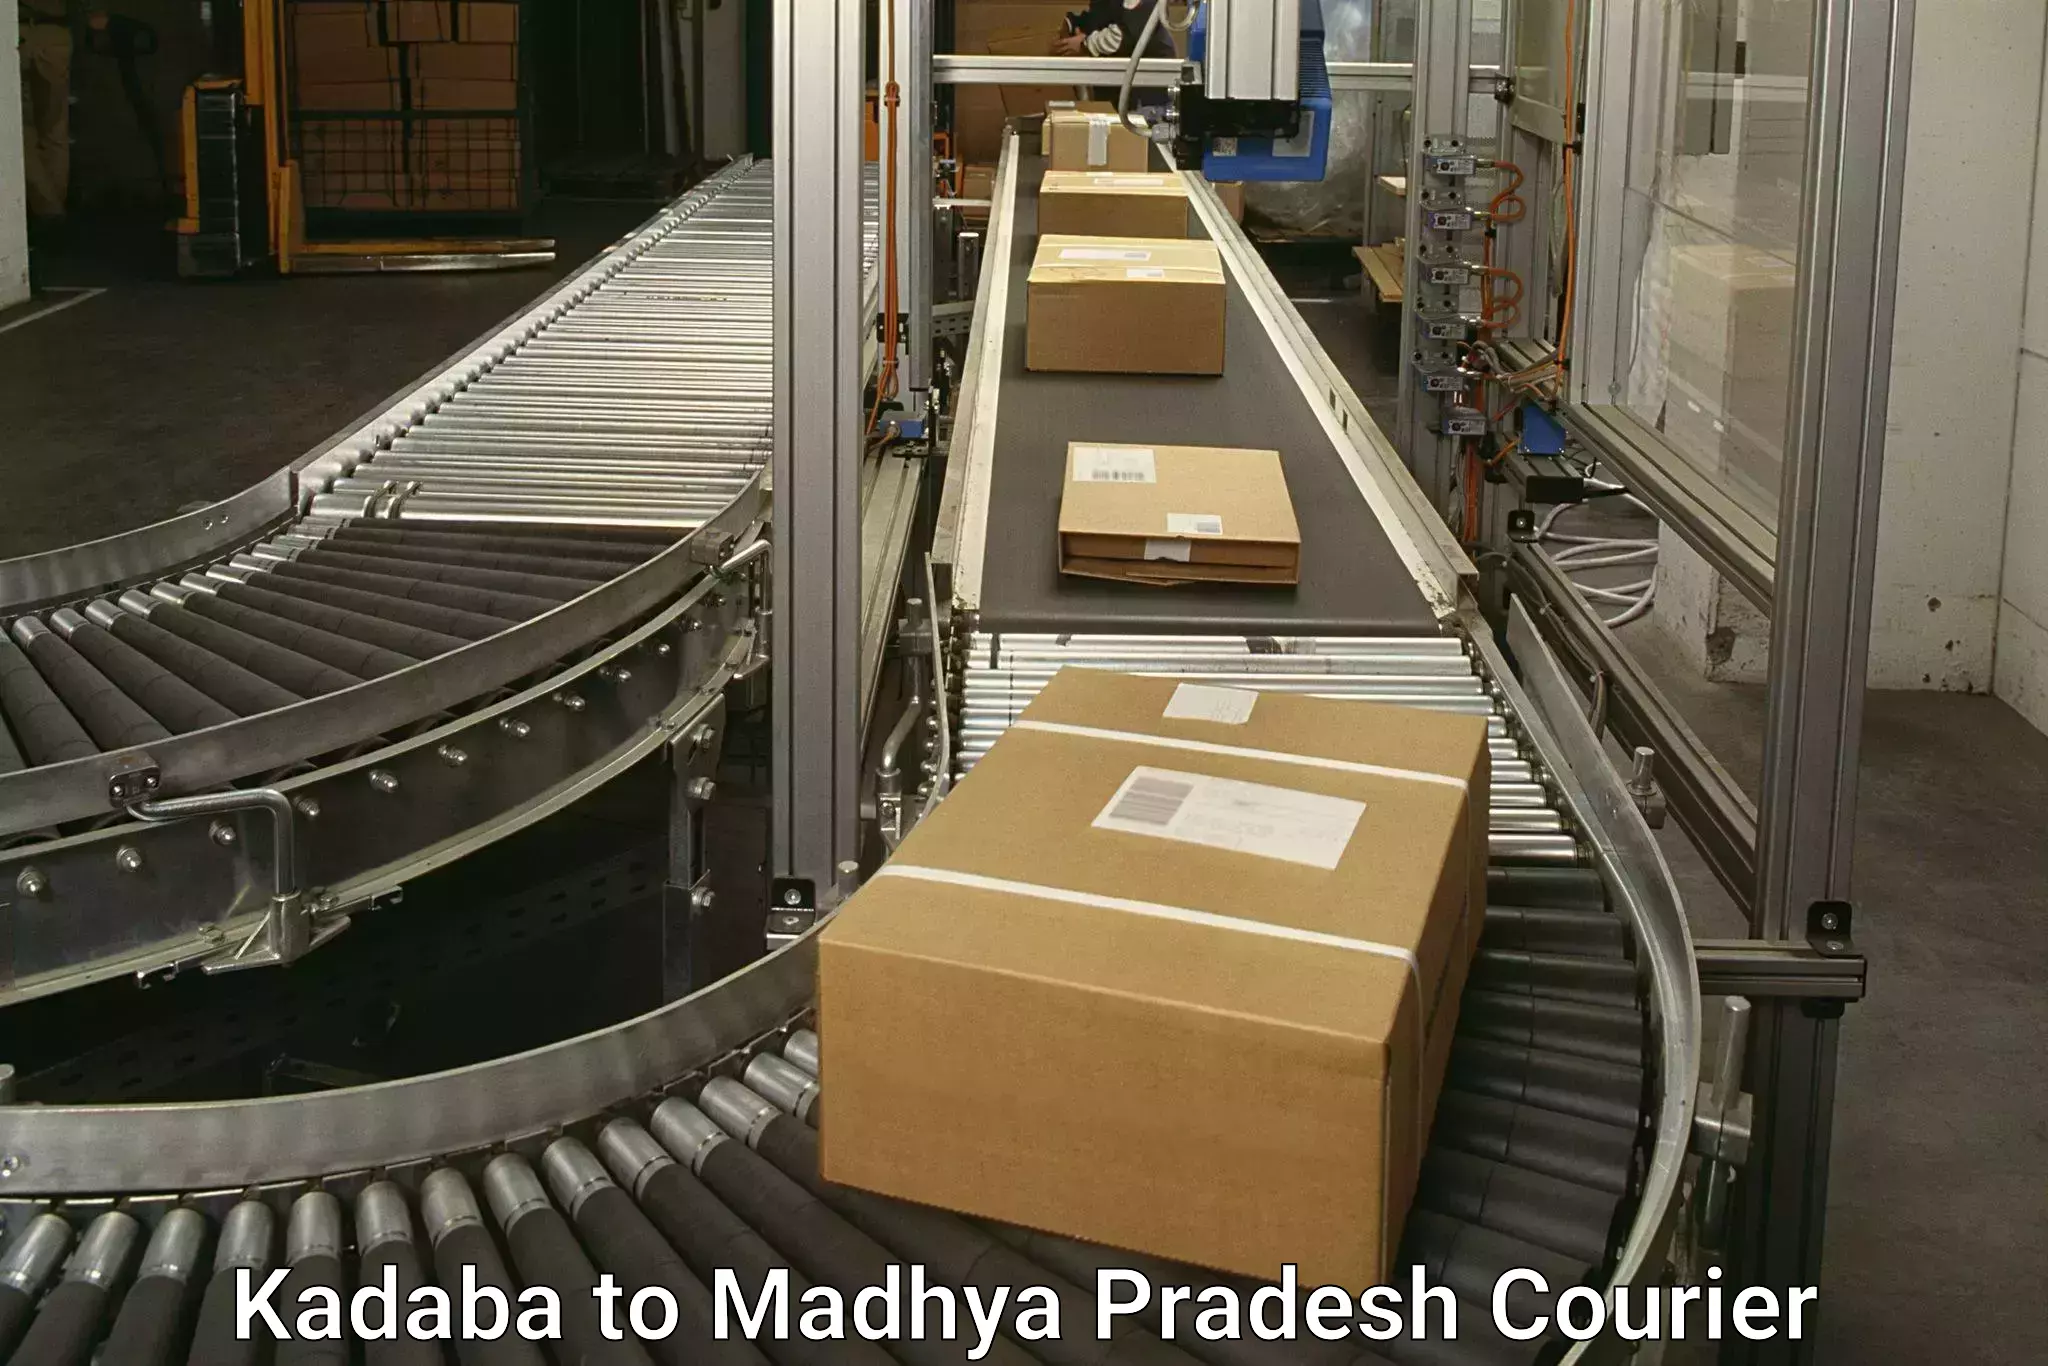 Express delivery capabilities Kadaba to Tikamgarh